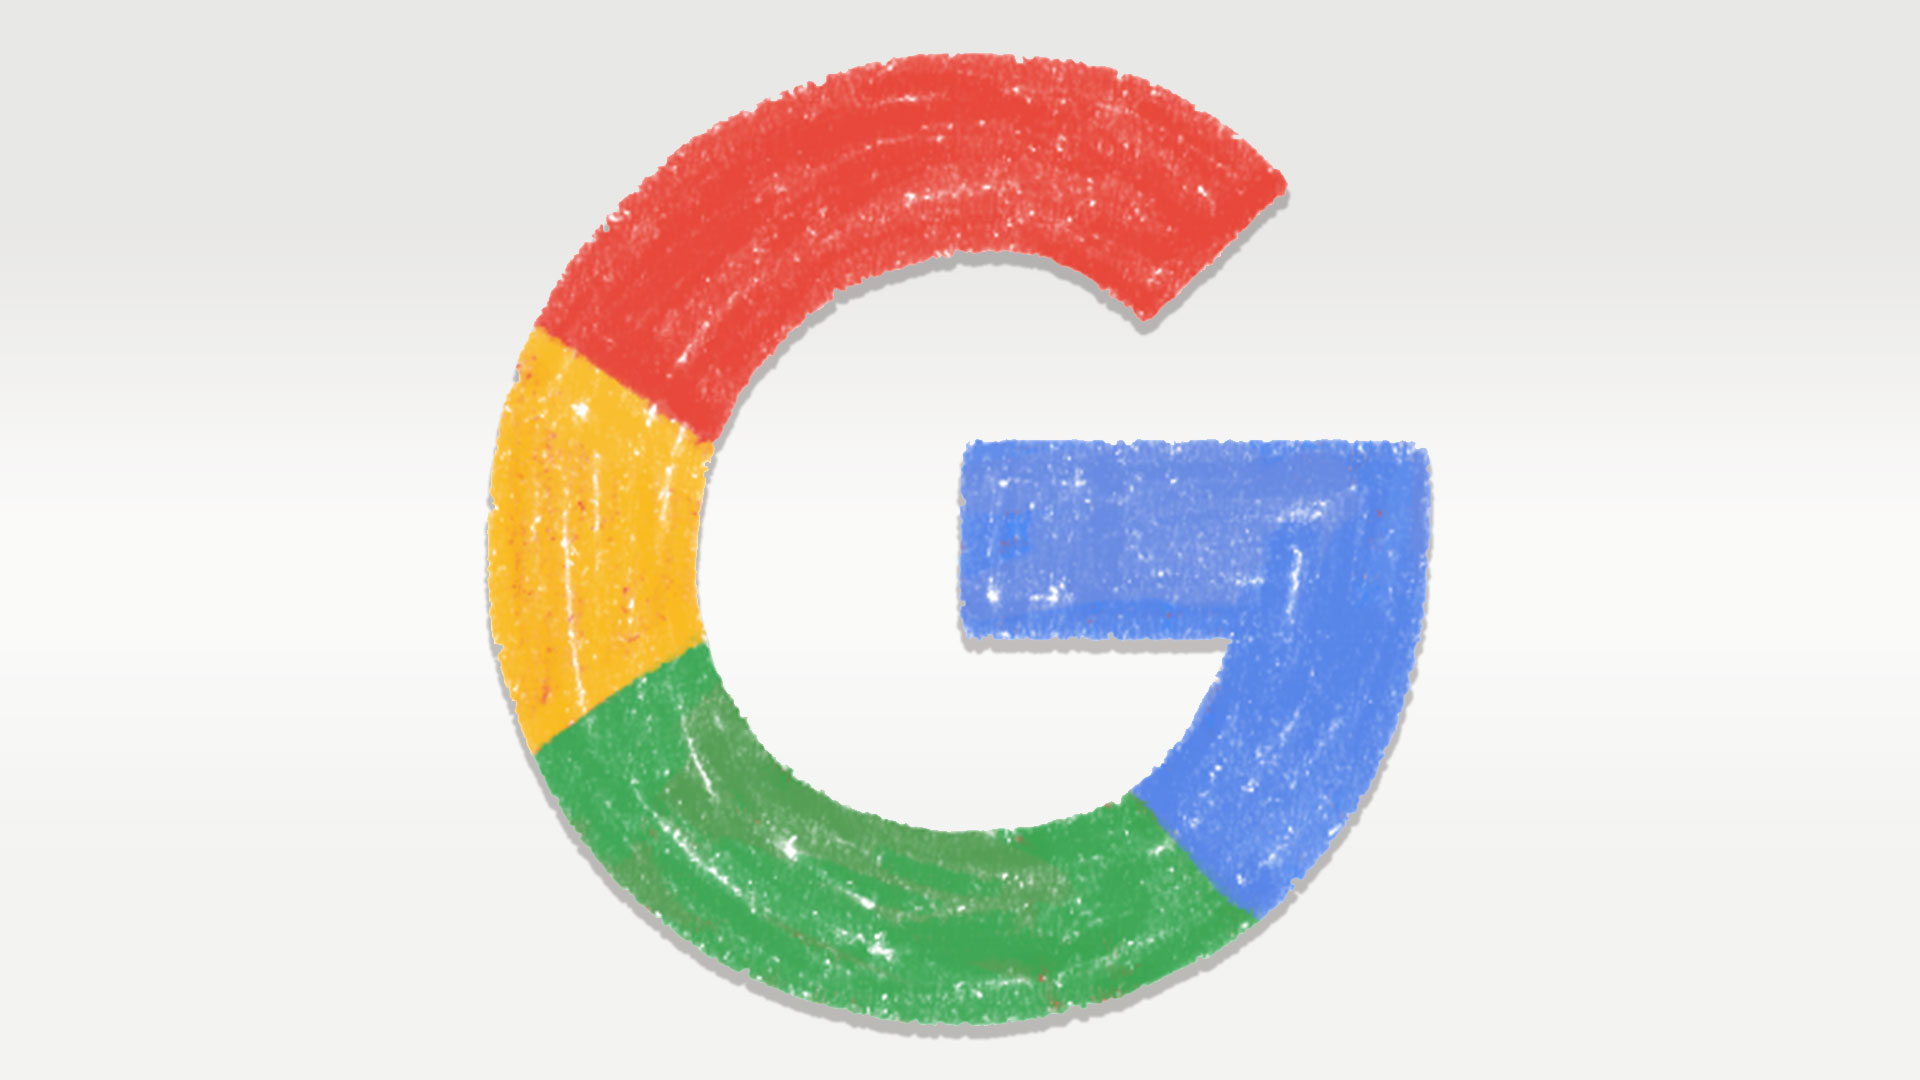 نتایج جستجو در گوگل